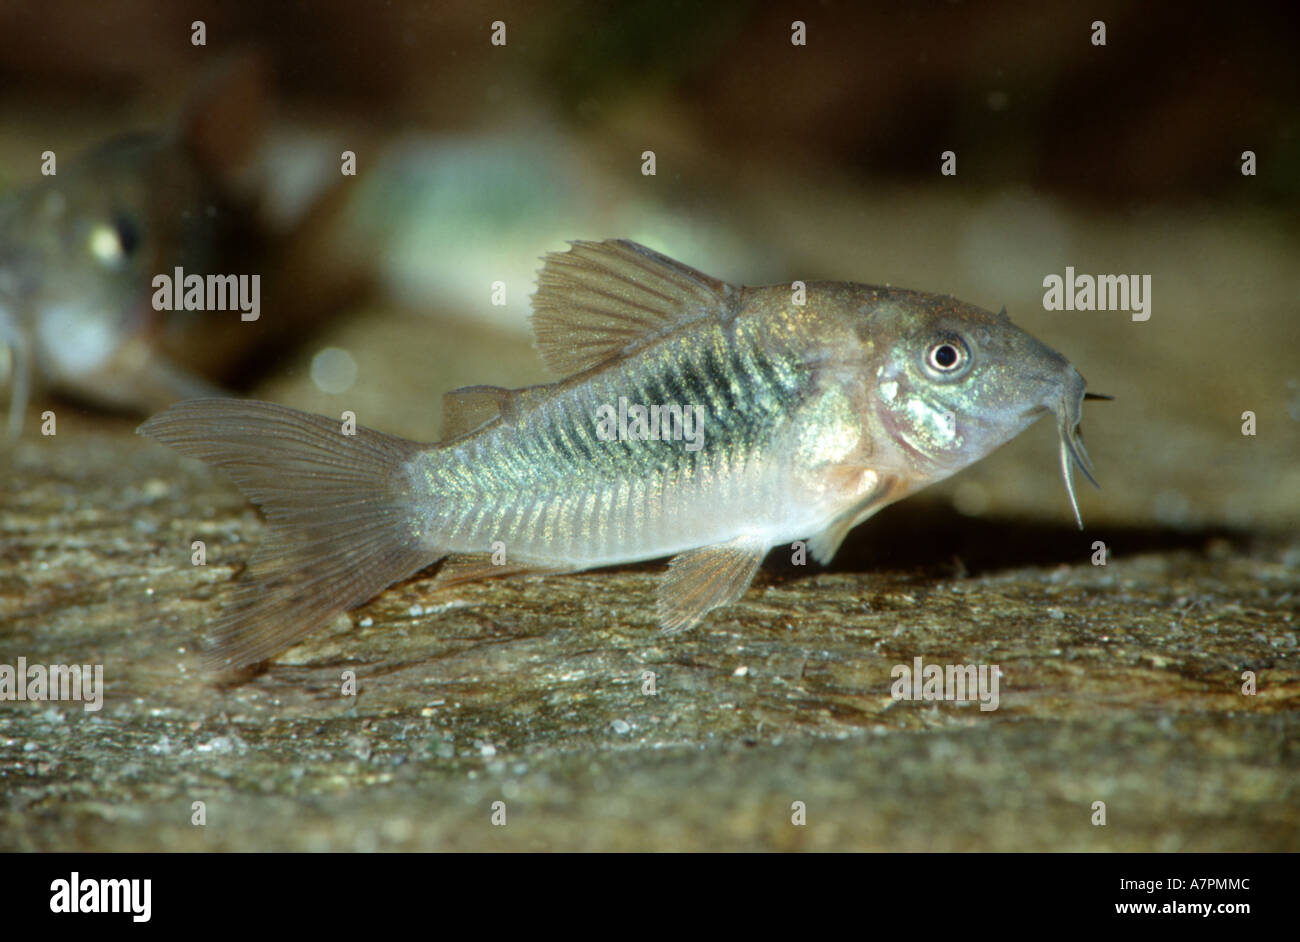 bronze corydoras, aeneus catfish (Corydoras aeneus), sitting on stone, Tobago Stock Photo